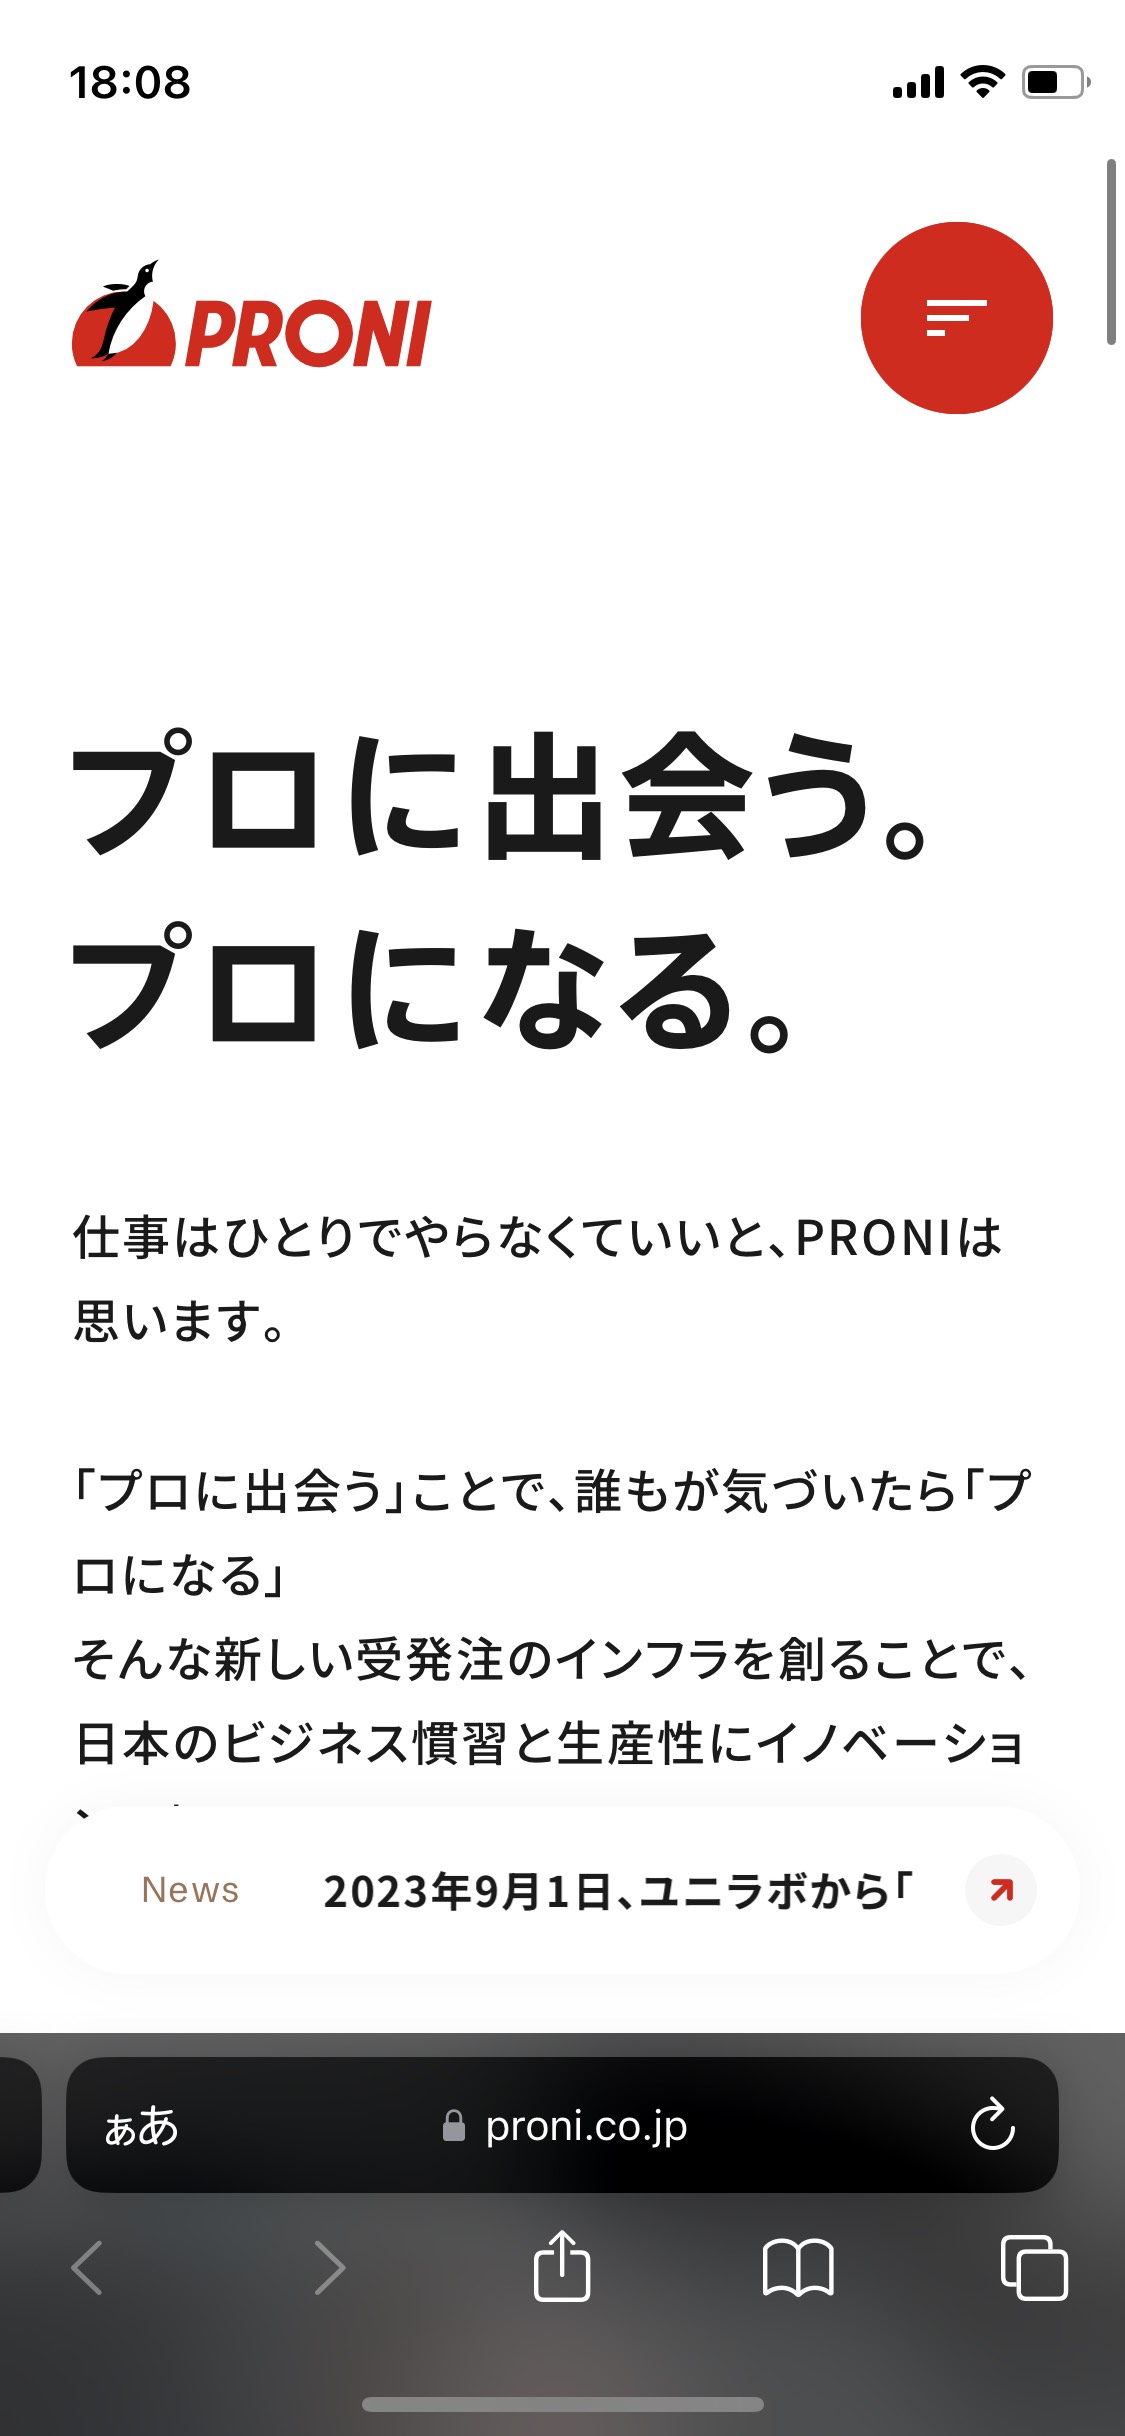 PRONI株式会社のサイト